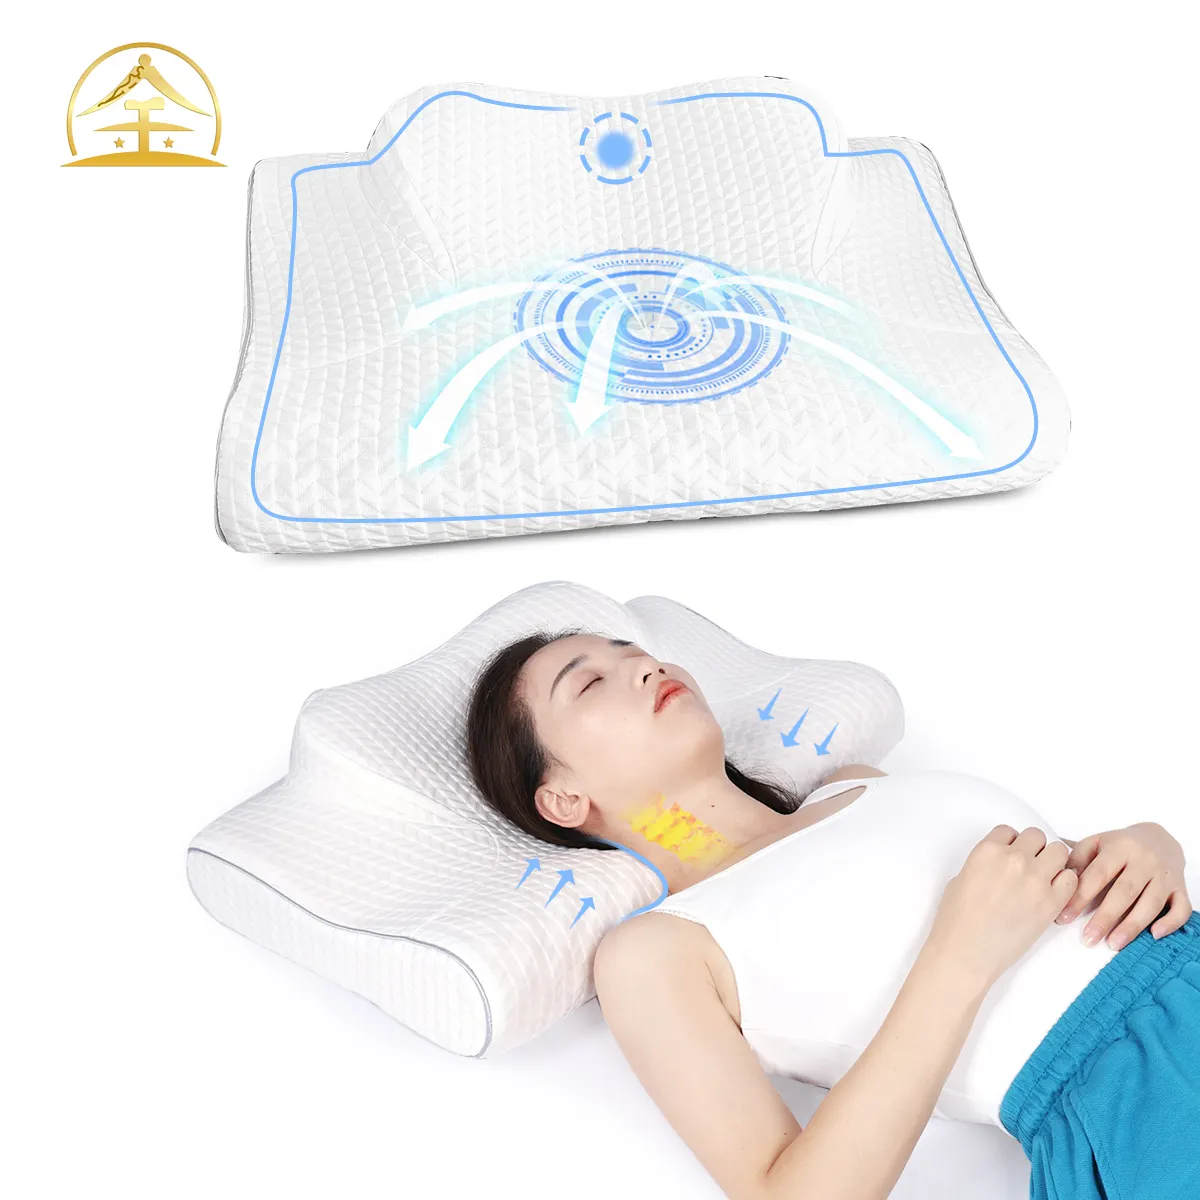 Nouveau design oreiller cervical en mousse à mémoire de forme pour la douleur au cou oreiller de couchage ergonomique pour oreiller papillon de soulagement des épaules